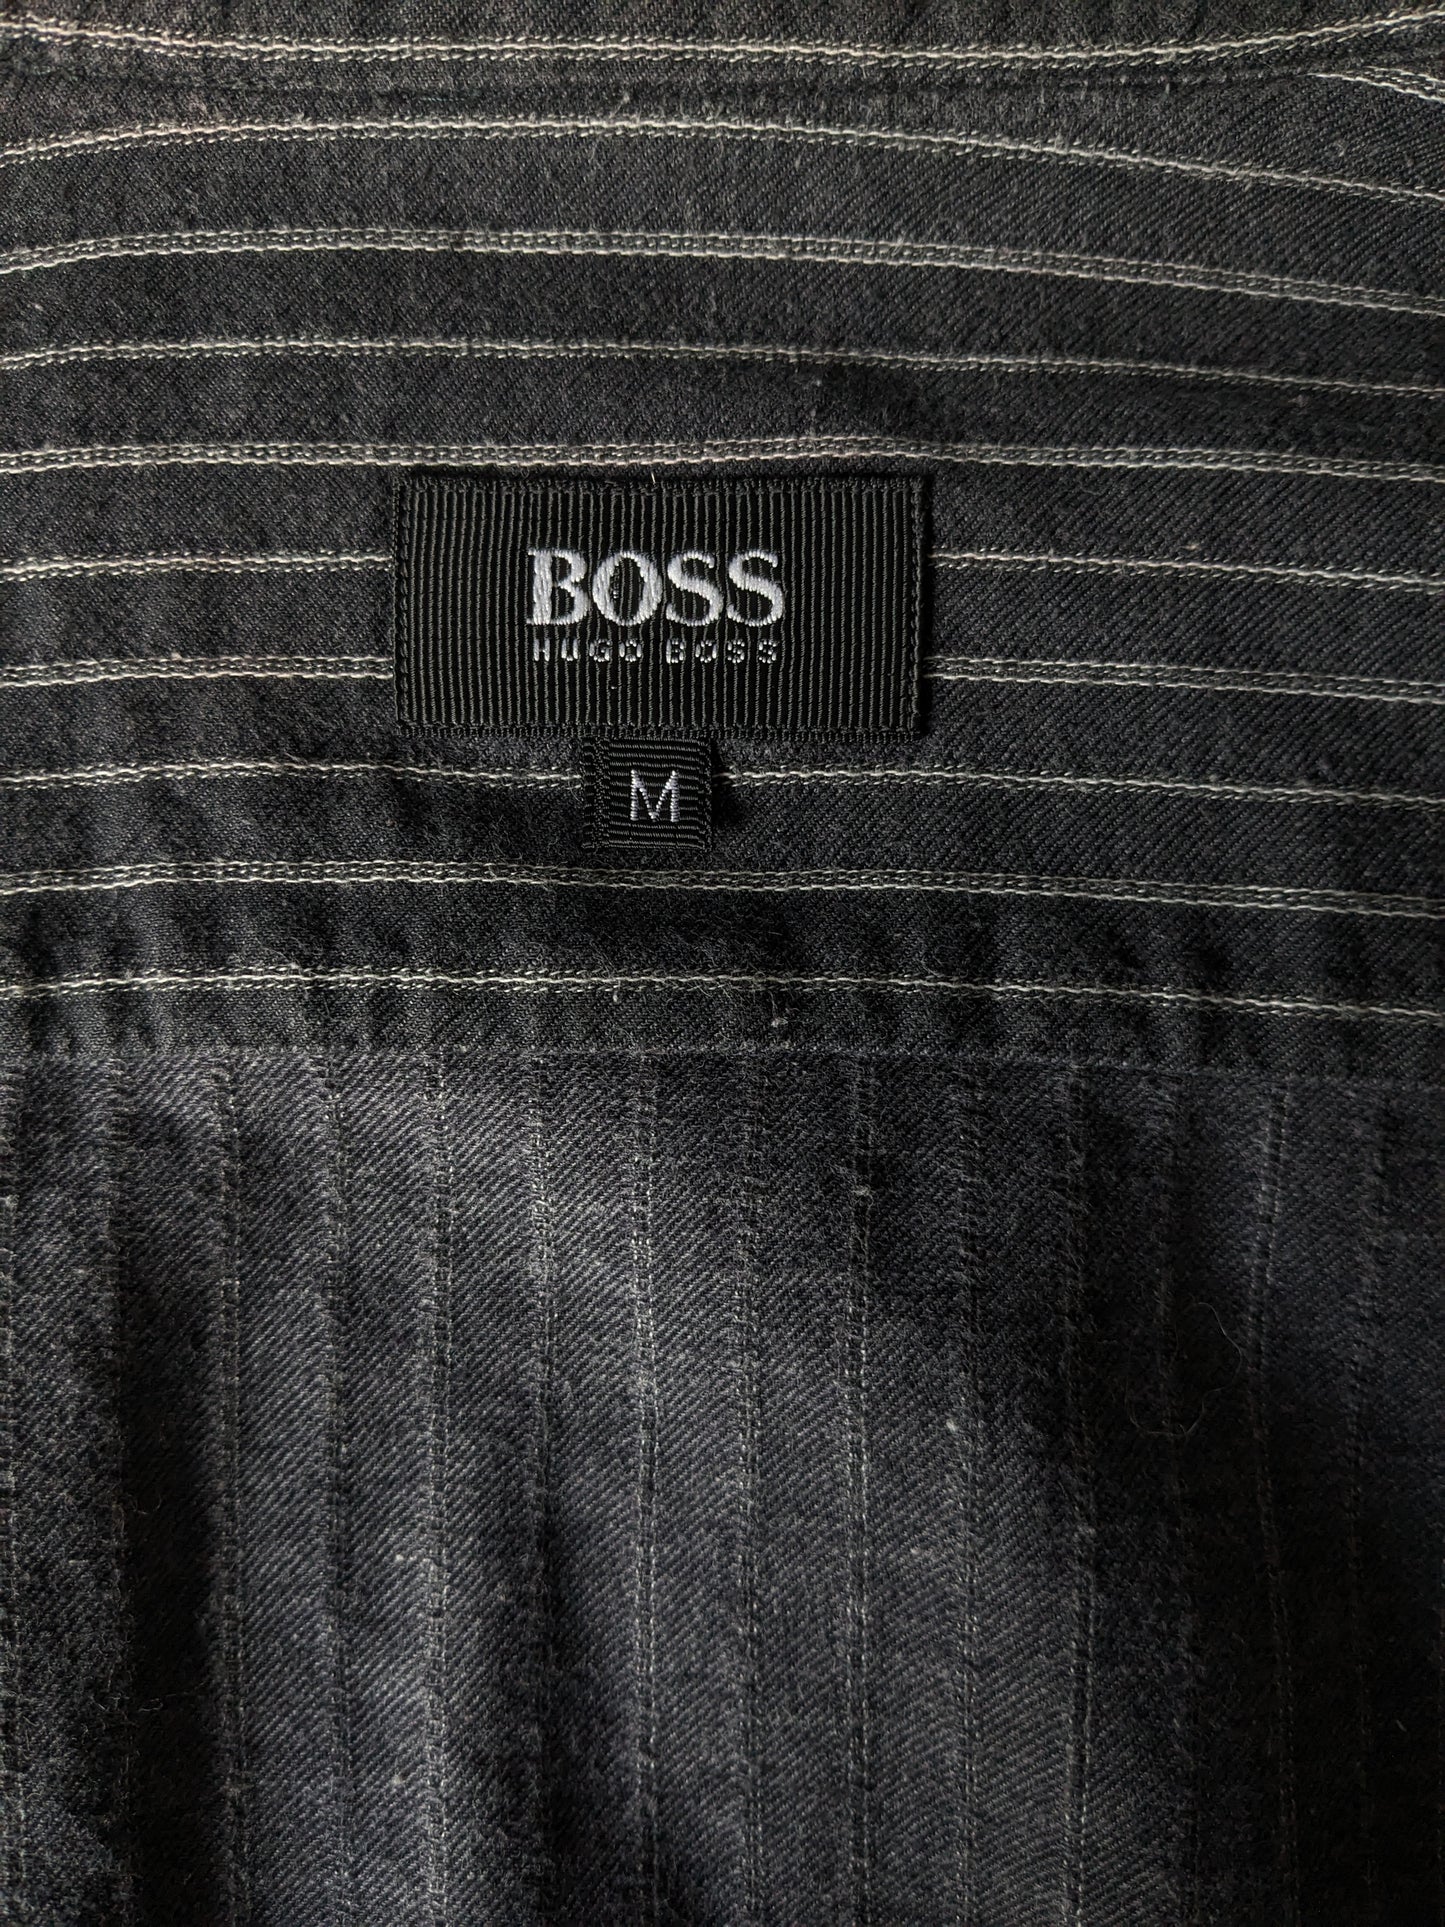 Vintage Boss Hugo Boss overhemd met mao / boeren- /  opstaande kraag. Zwart Wit gestreept. Maat M / L.